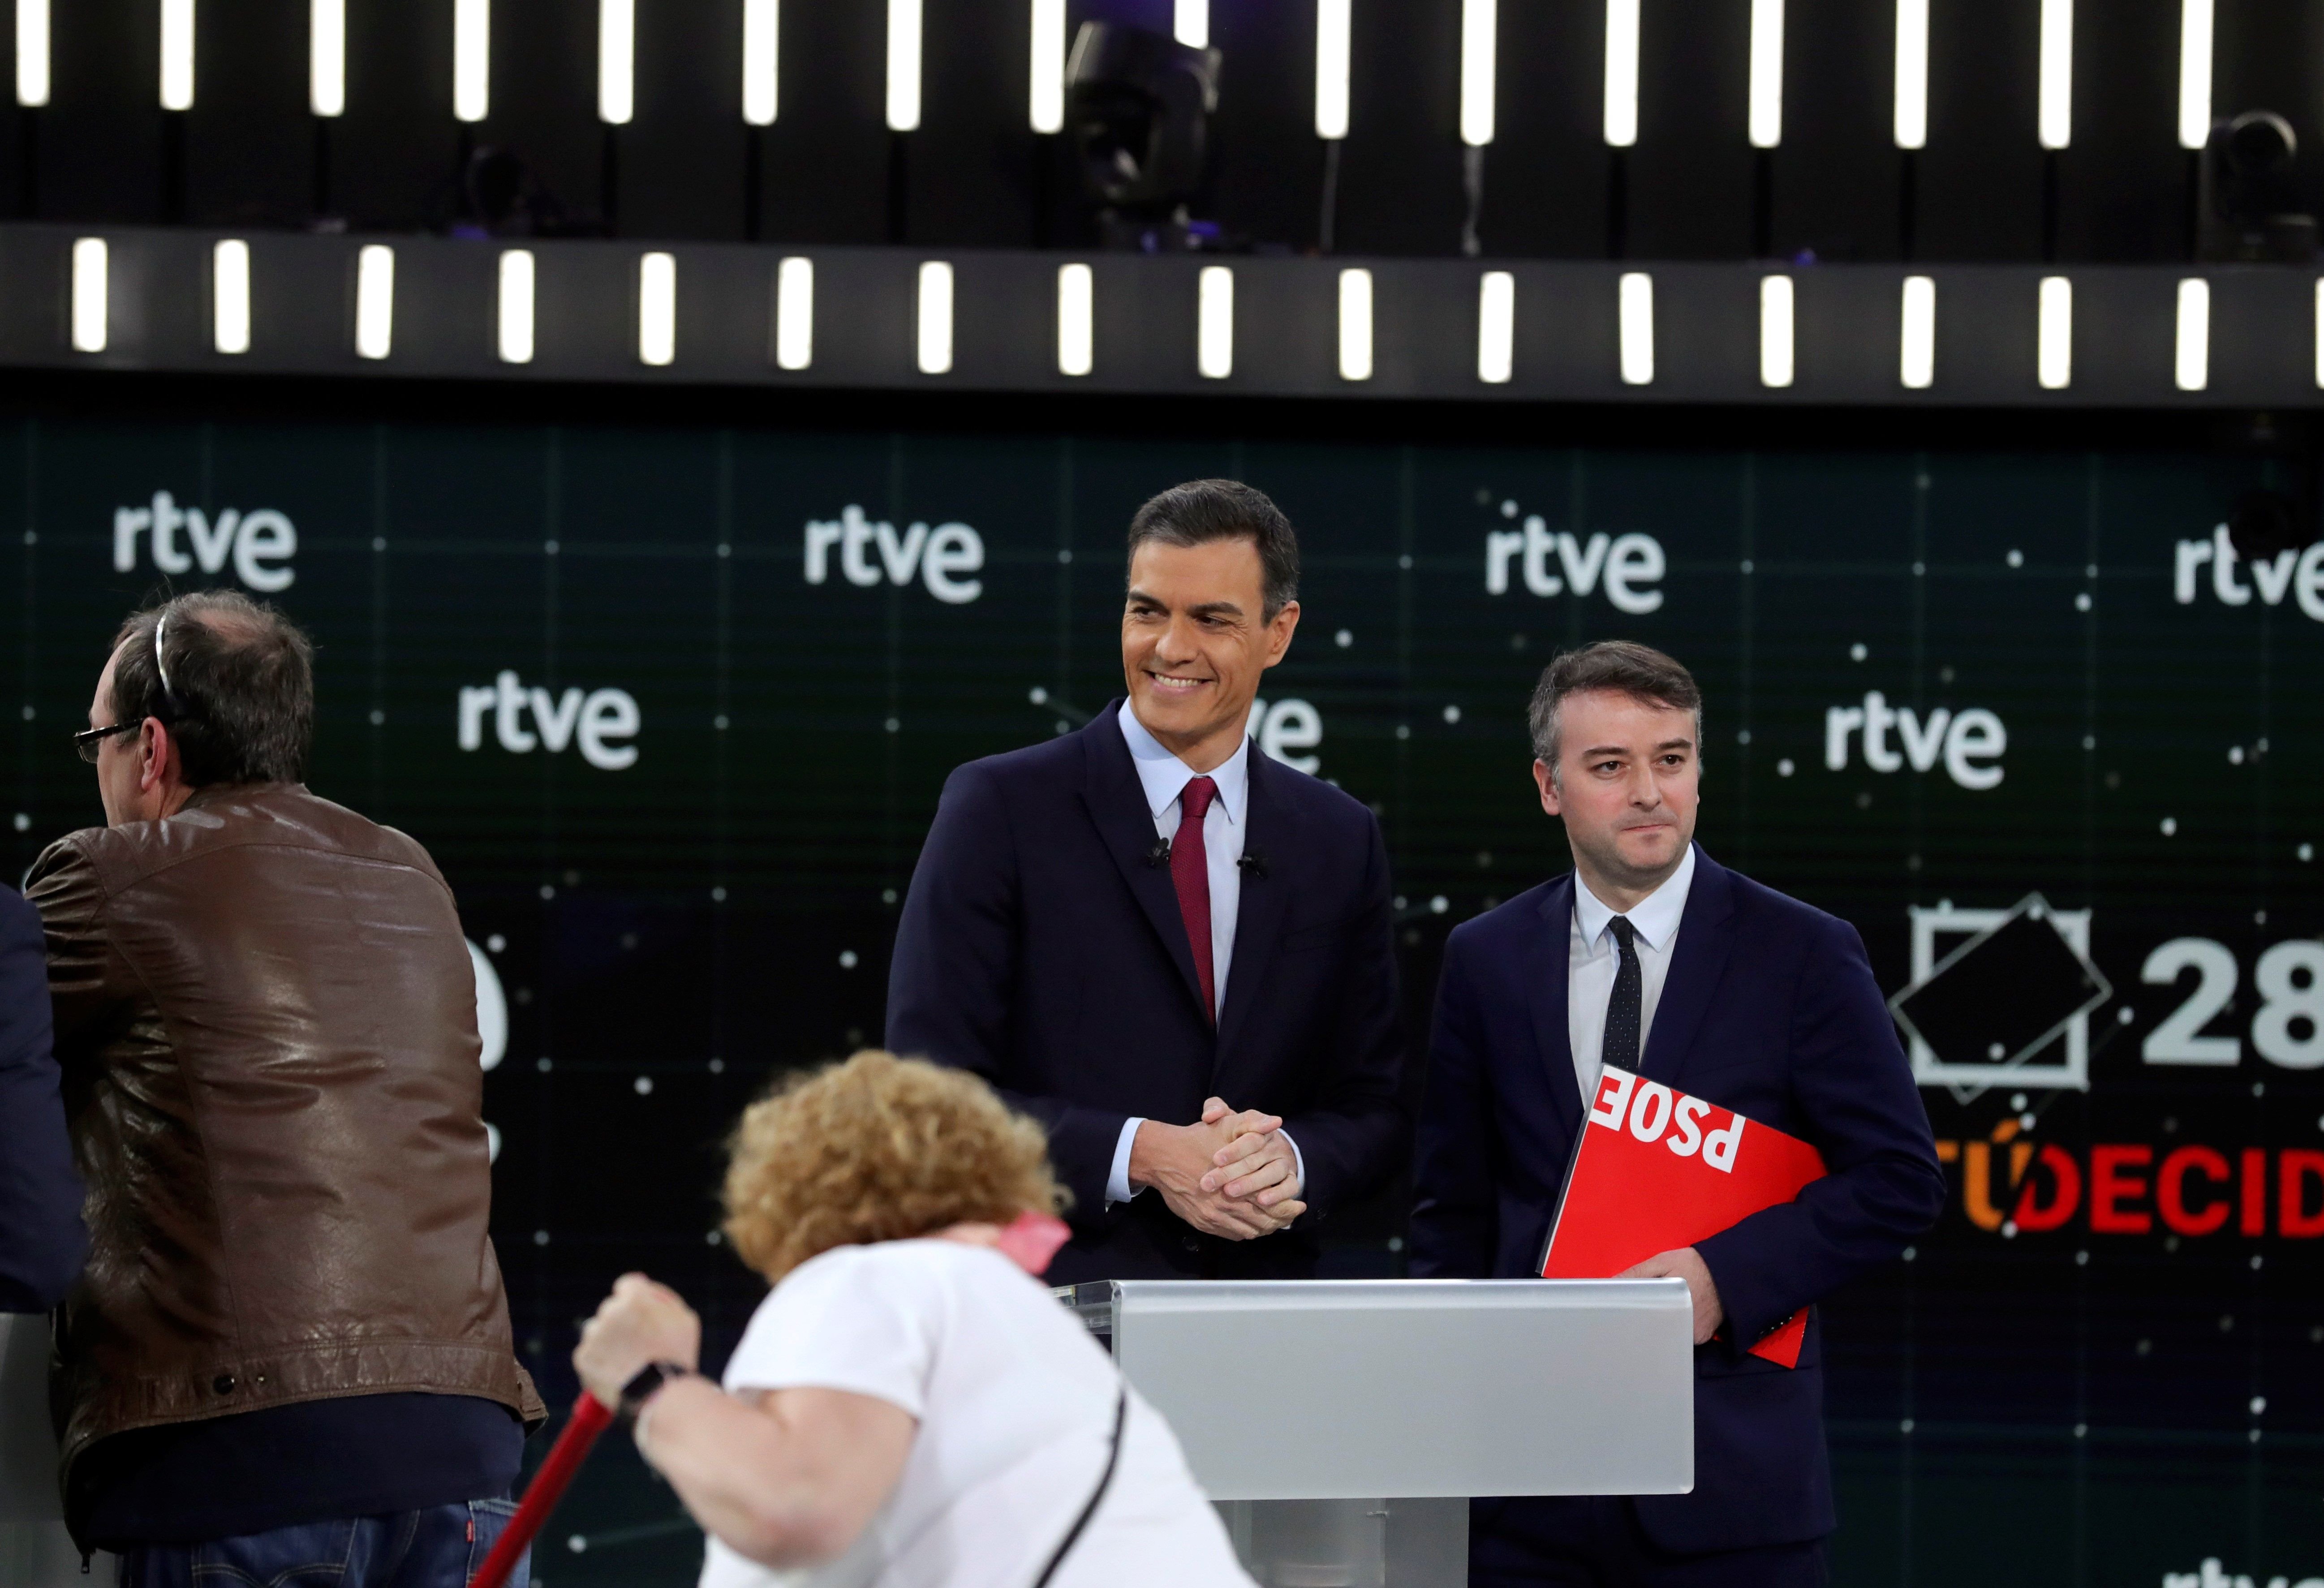 Allau de crítiques al debat de TVE per l'absència dels partits catalans